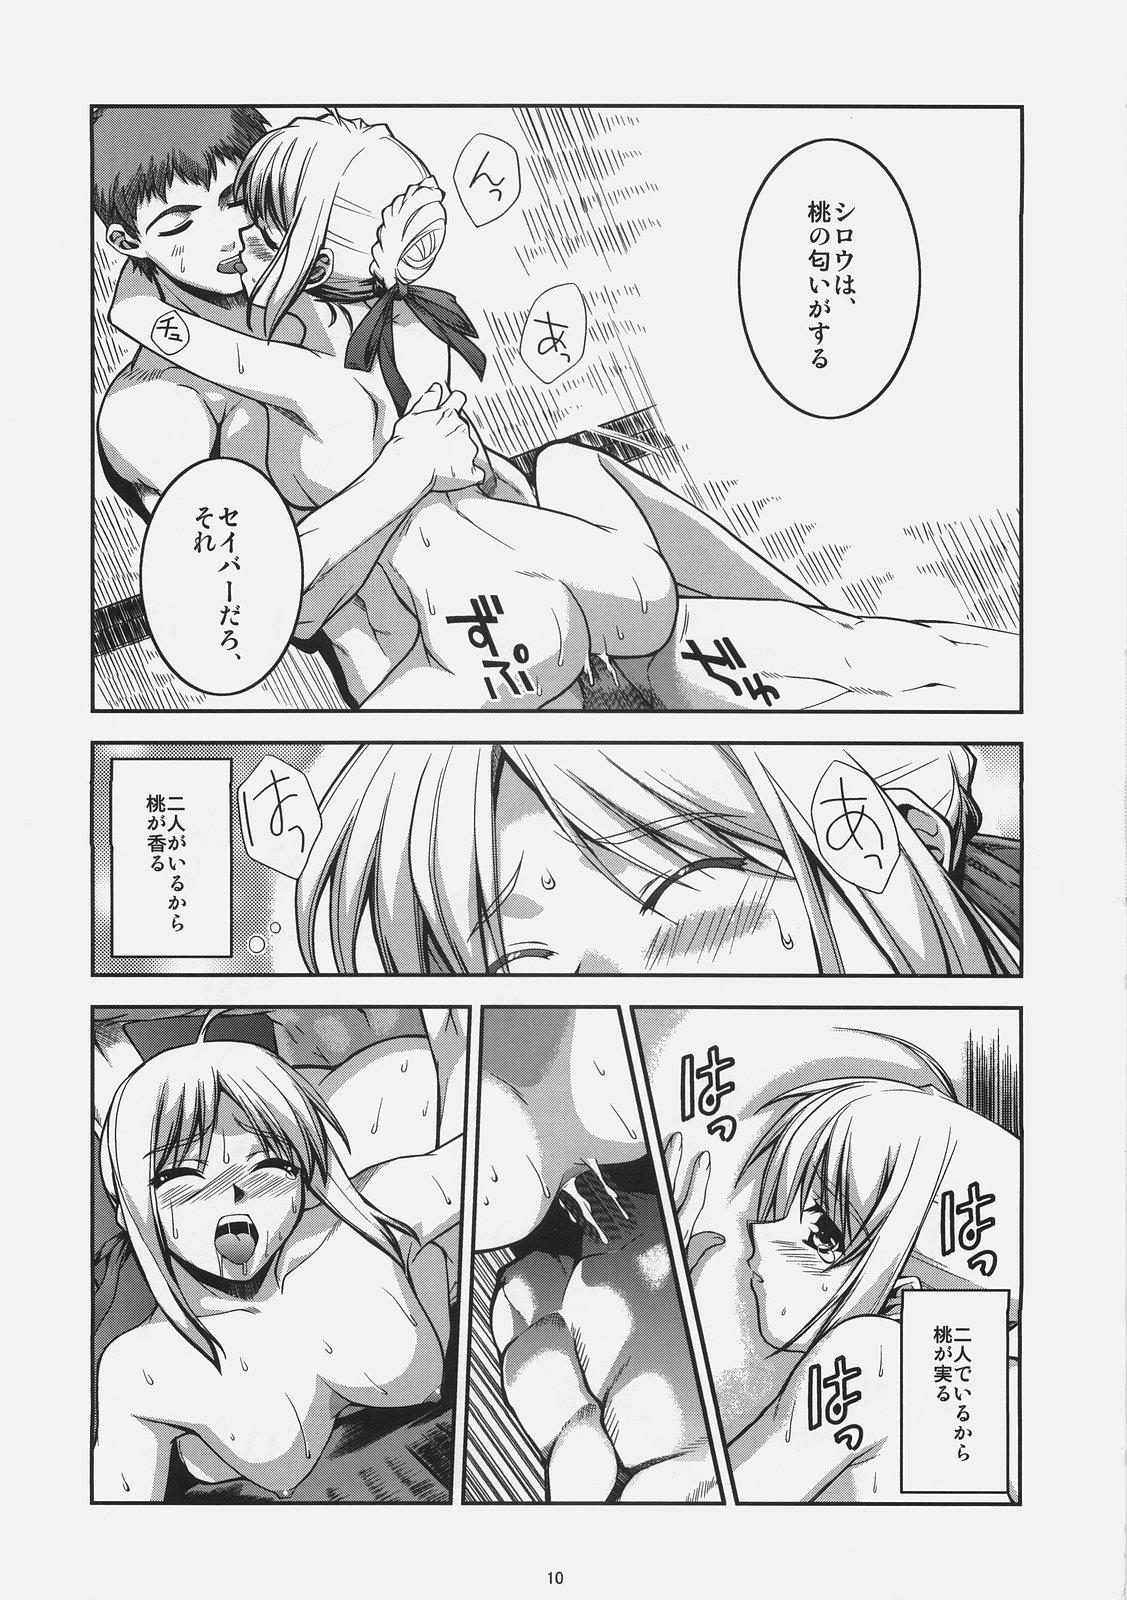 Chichona Kuuneru Asobu - Fate stay night Buttfucking - Page 10